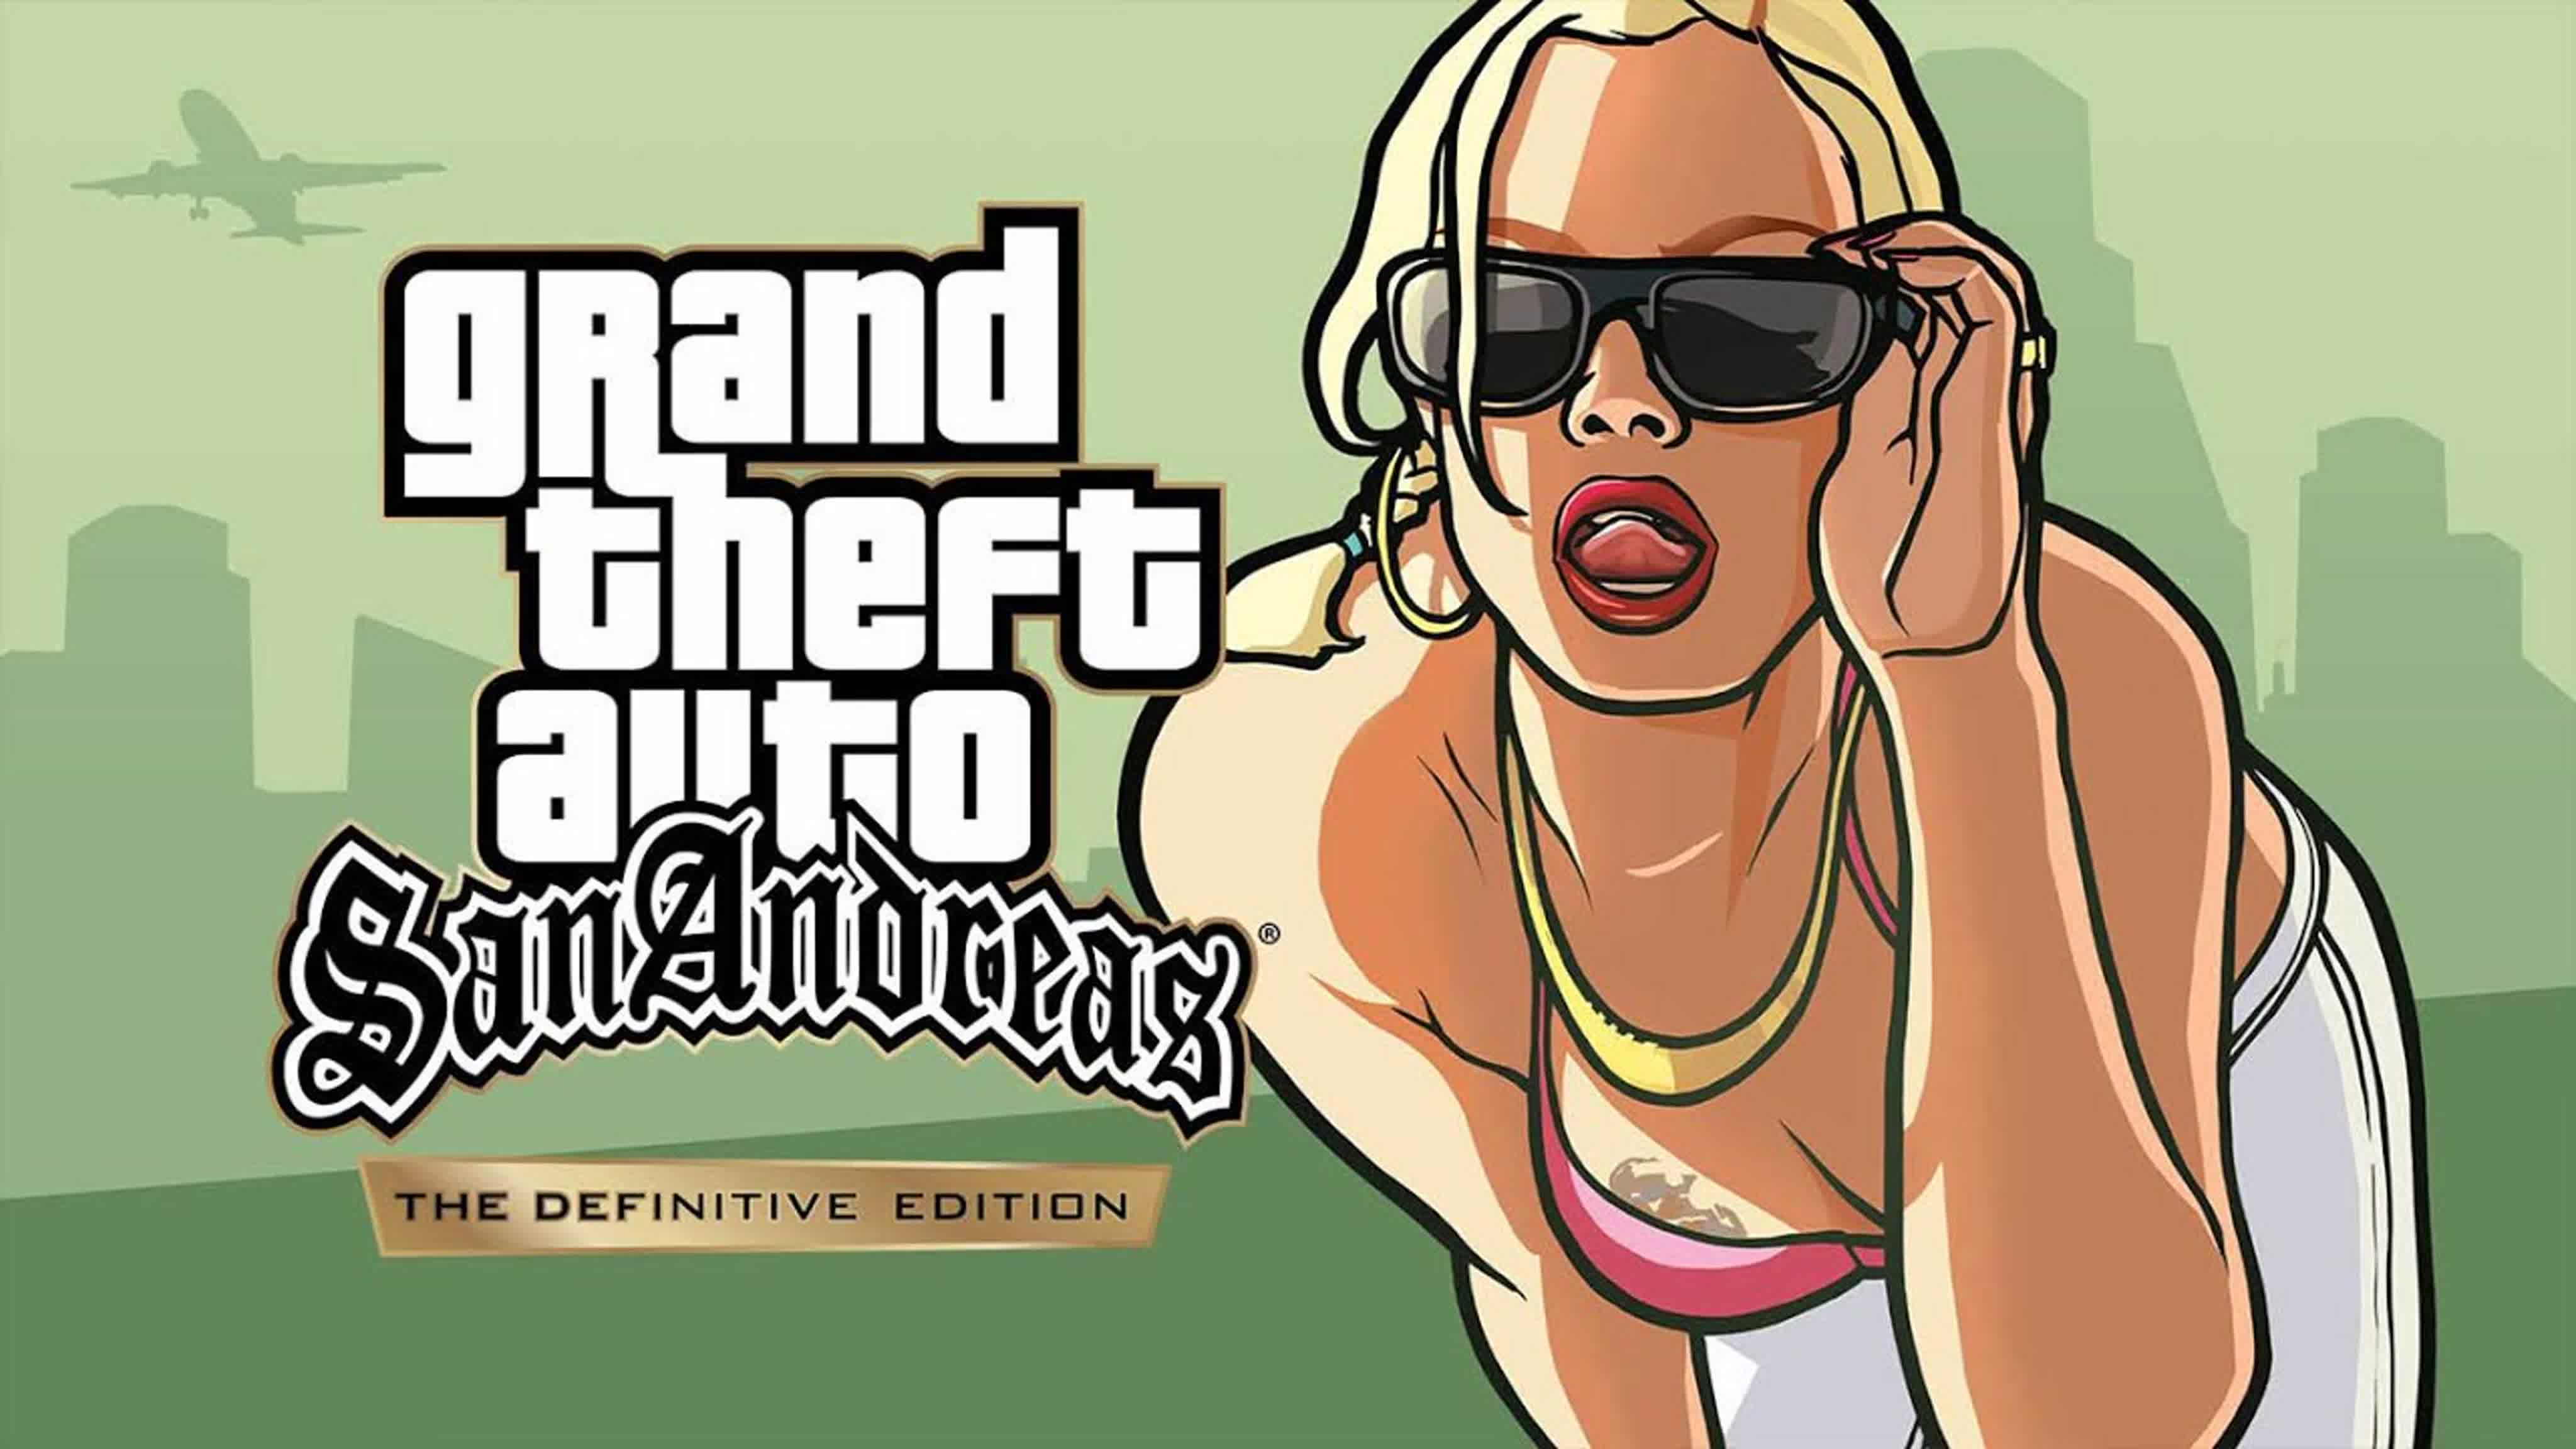 Сан андреас дефинитив. Grand Theft auto: San Andreas. GTA San Andreas Definitive Edition. Grand Theft auto Сан андреас. Картинки из ГТА Сан андреас.